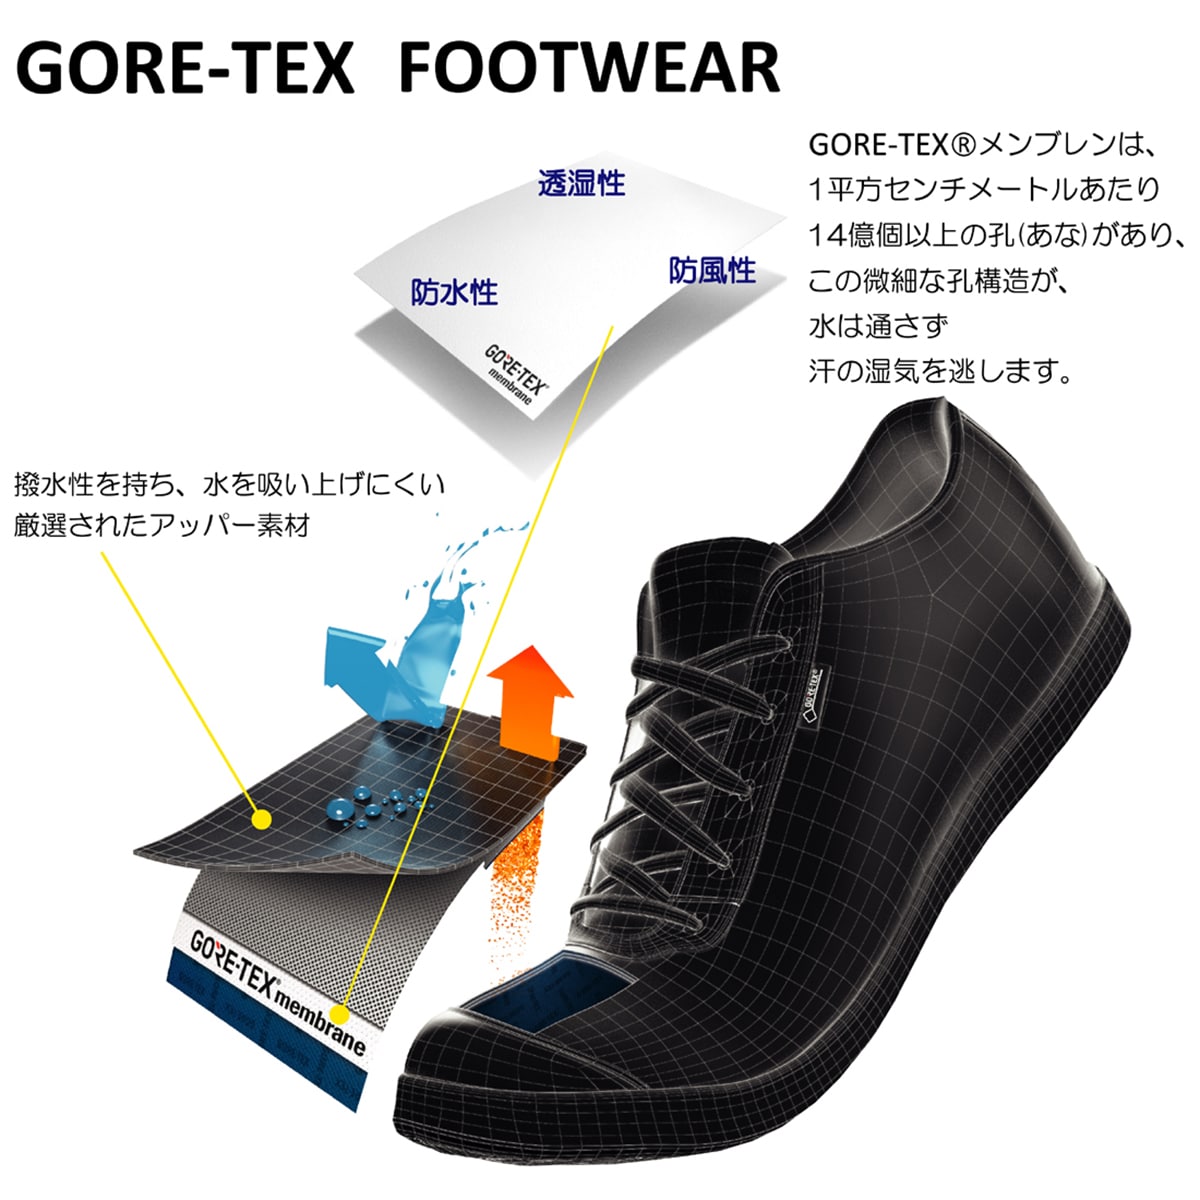 【GORE-TEX】 マドラスウォーク madras Walk ゴアテックス フットウェア 幅広ラウンドトウのユーチップ MW5905 D-BROWN 25.0